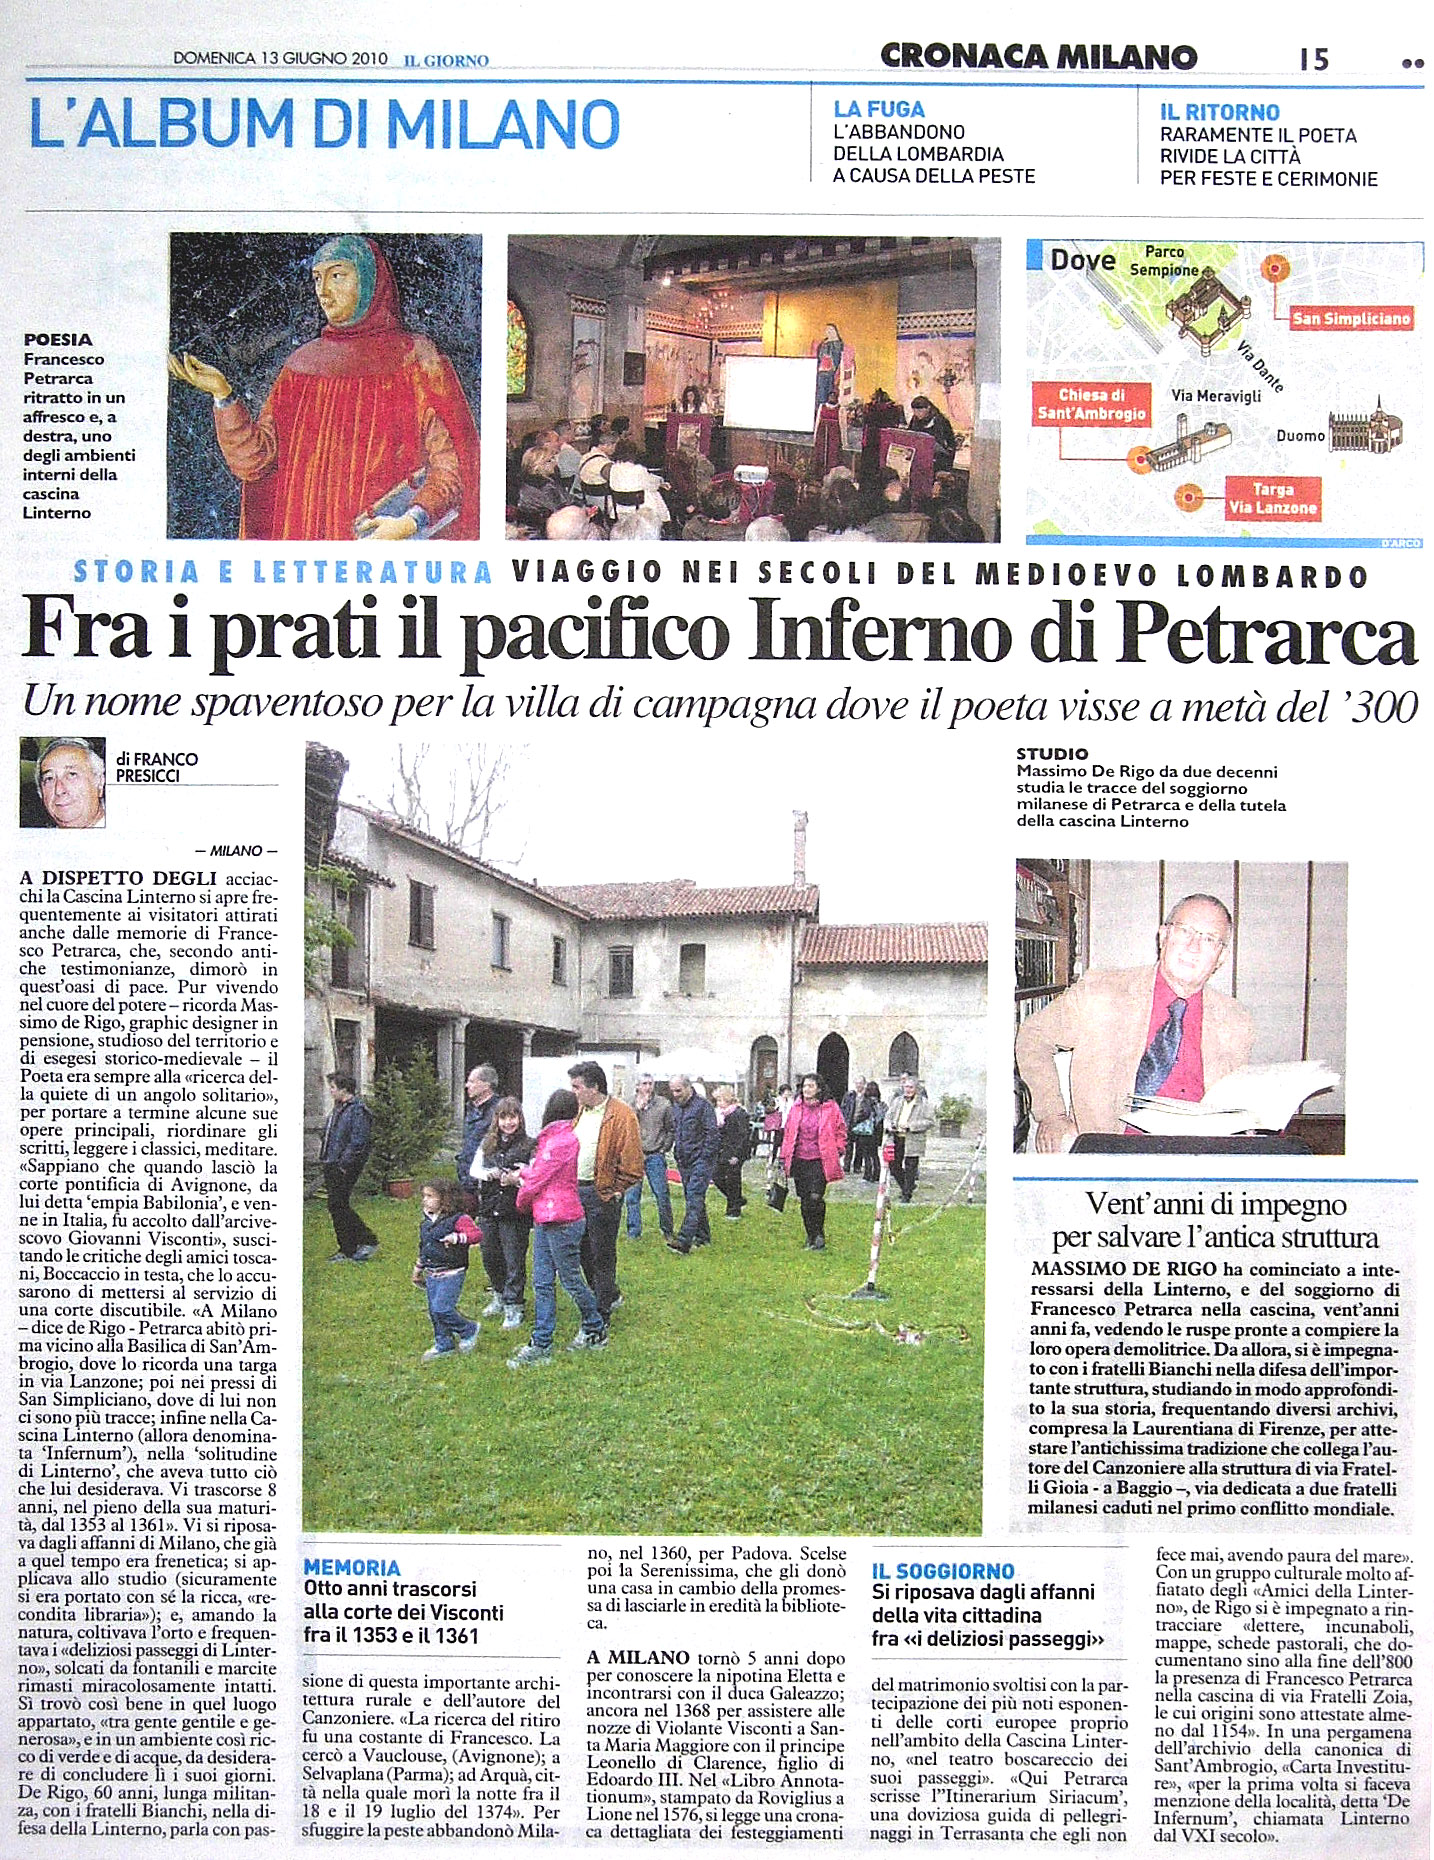 Intervista sulla Solitudine di Linterno di Petrarca. Il Giorno, 13 giugno 2010